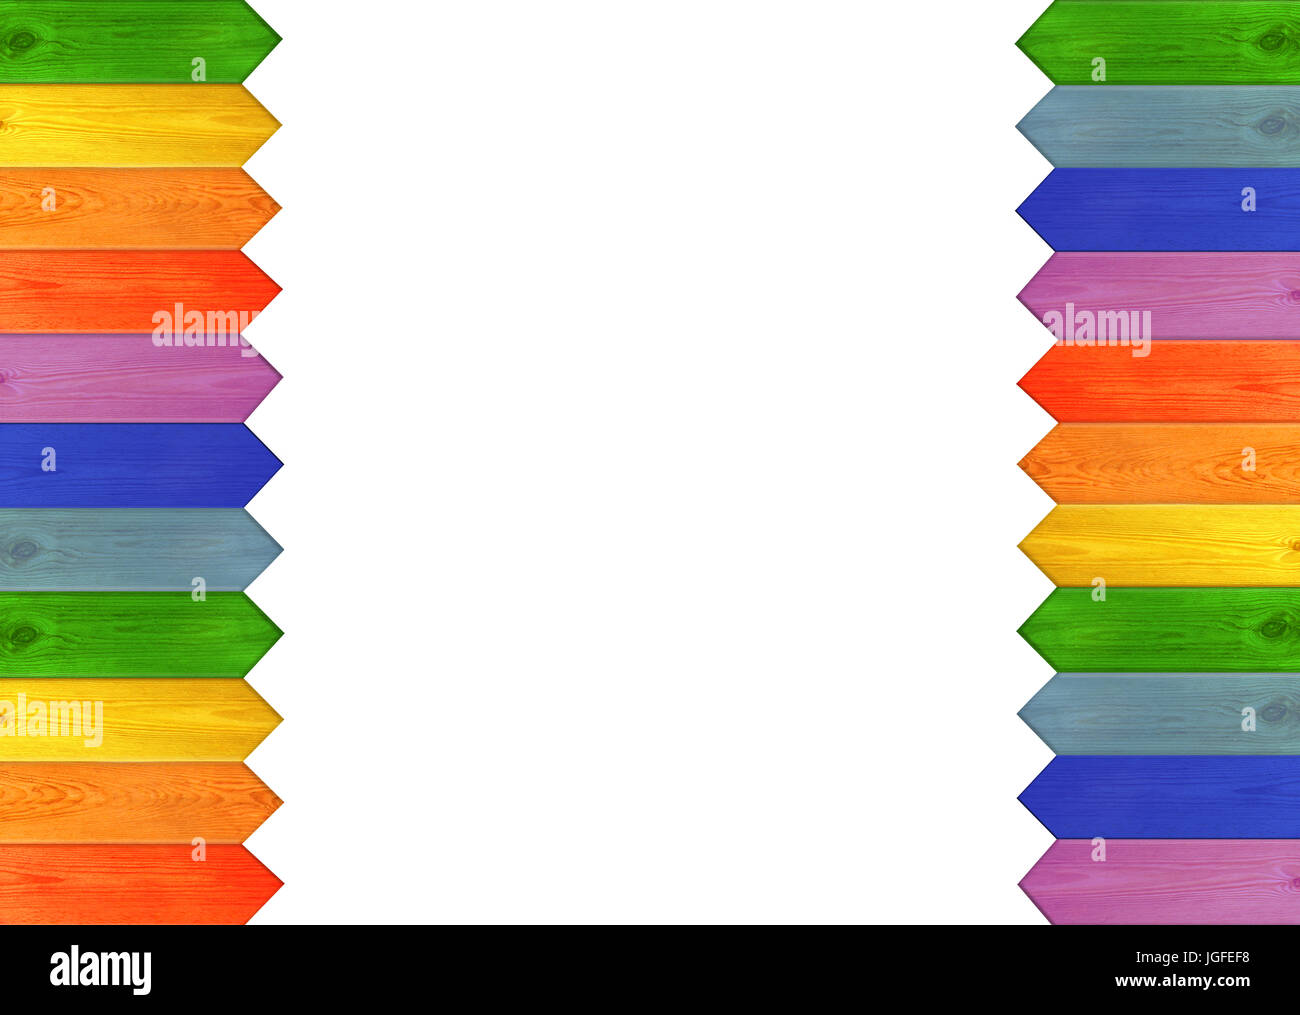 Recinzione multicolori sui bordi isolato su uno sfondo bianco. Multicolore di recinzione di legno dai colori dell'arcobaleno. Luogo vuoto per il testo Foto Stock